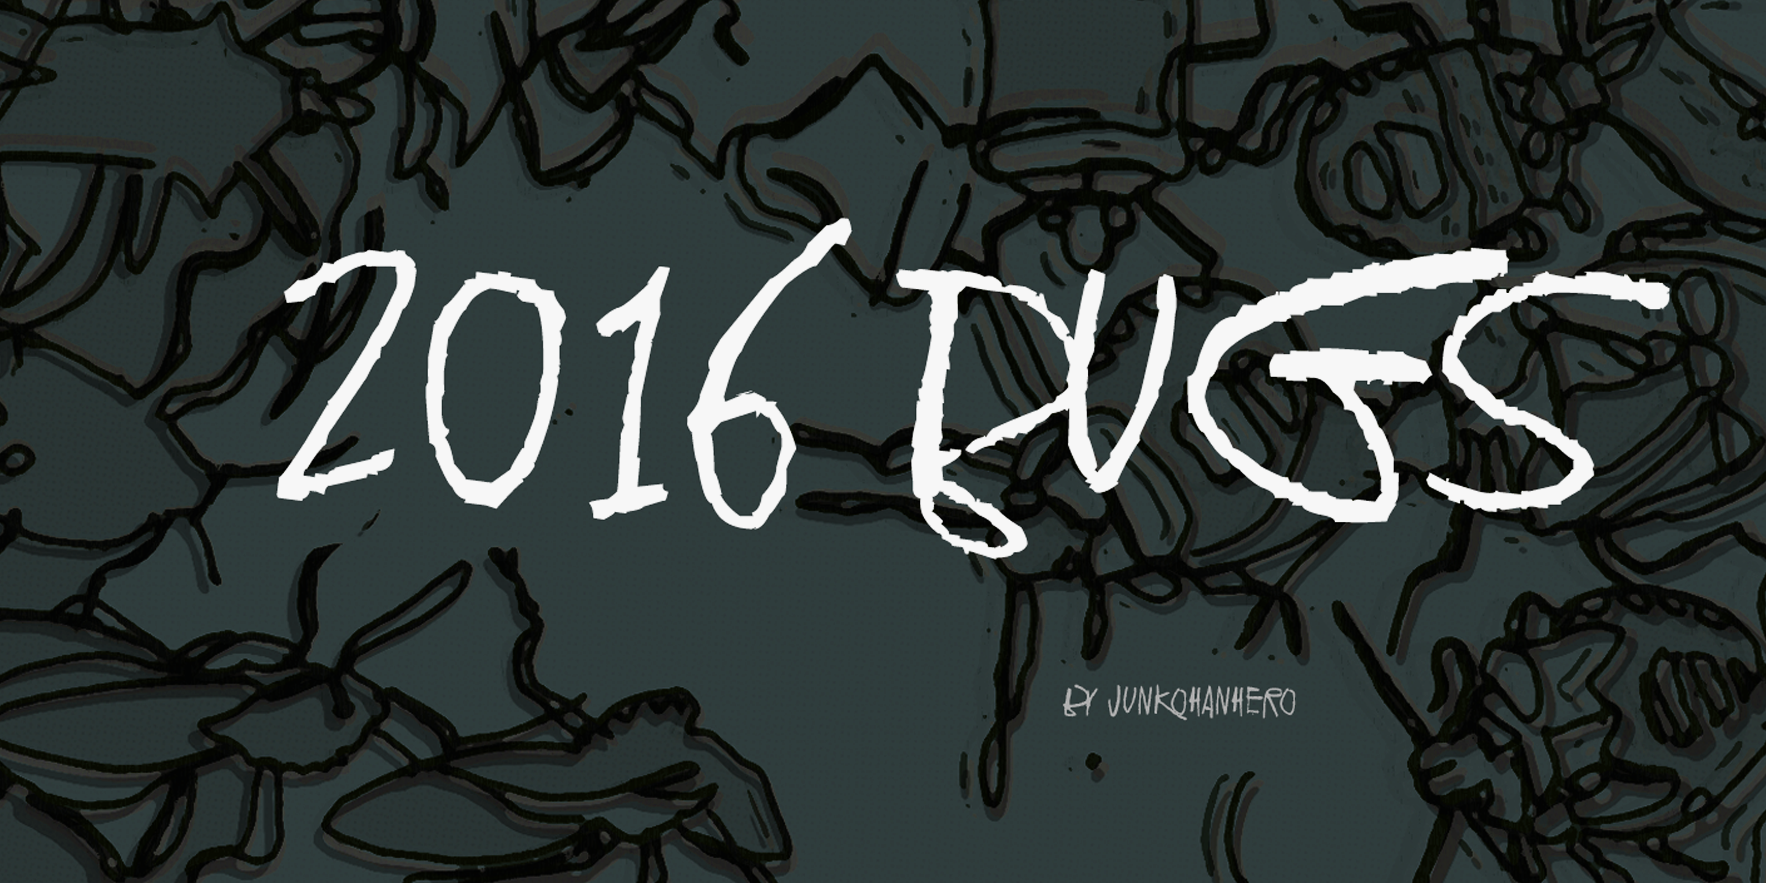 2016 Bugs